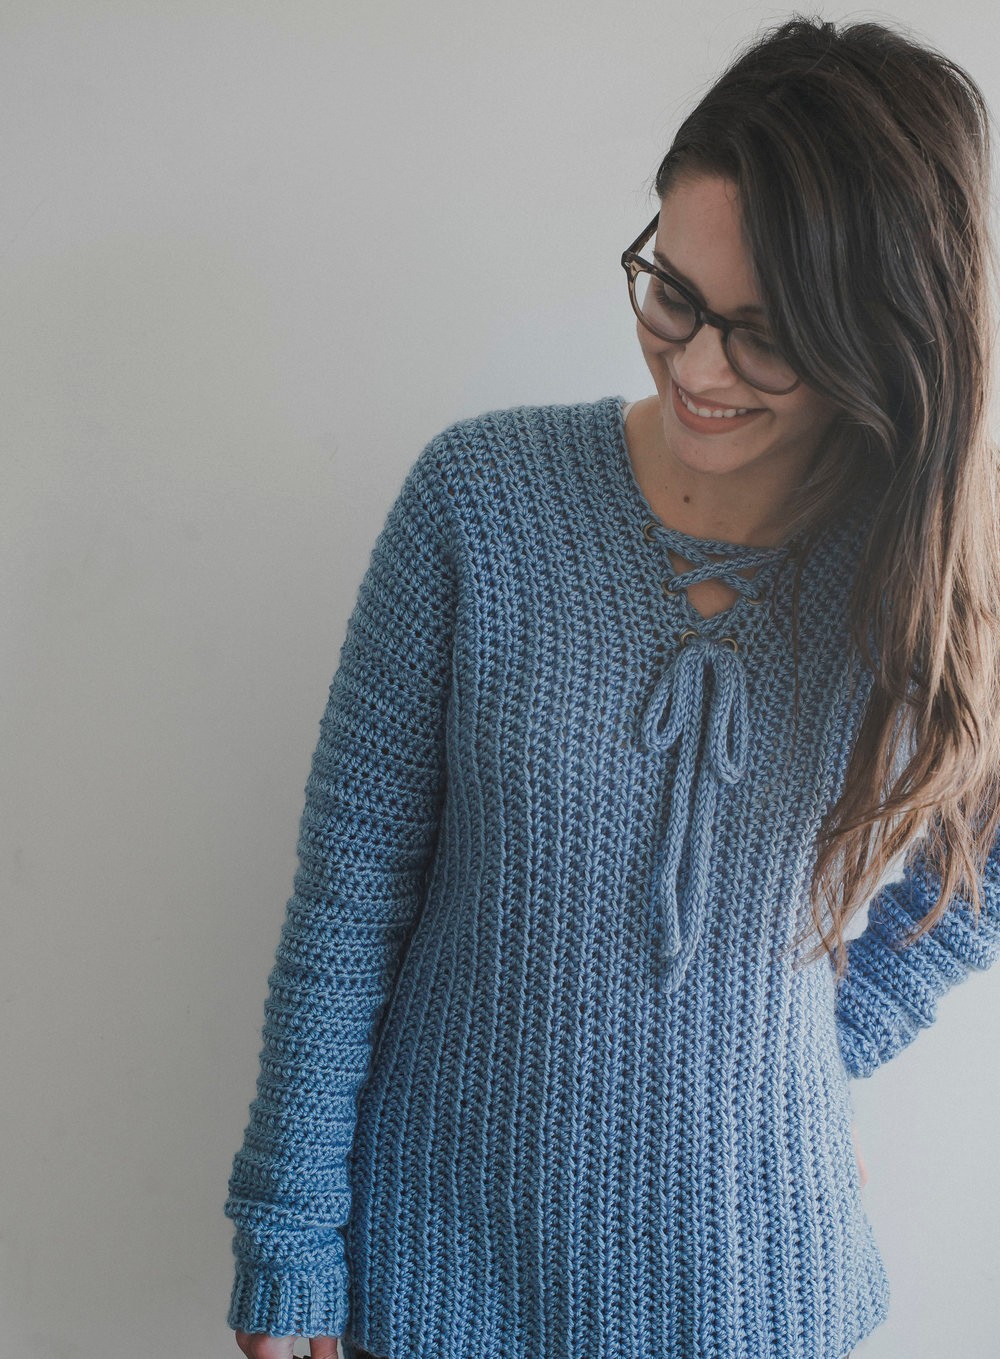 Heart crochet sweater pattern